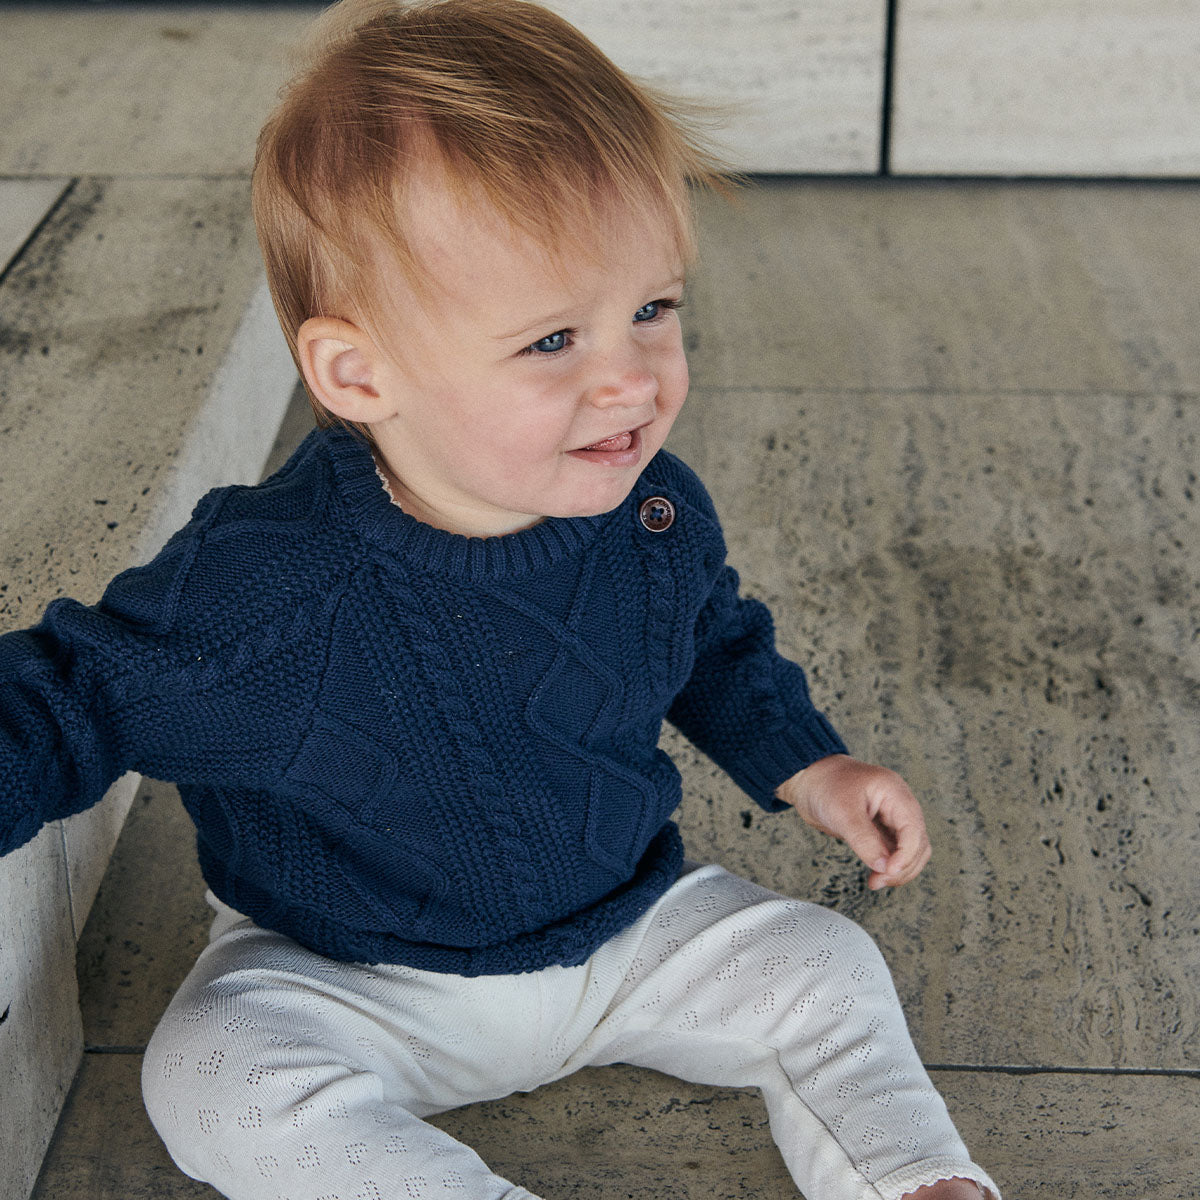 De pointelle heart broek in de kleur cream van Copenhagen Colors is perfect om te combineren met andere kledingstukken, kleuren en accessoires. Zacht, elastisch met een subtiel hartjes motief. In maten 50 t/m 80. VanZus